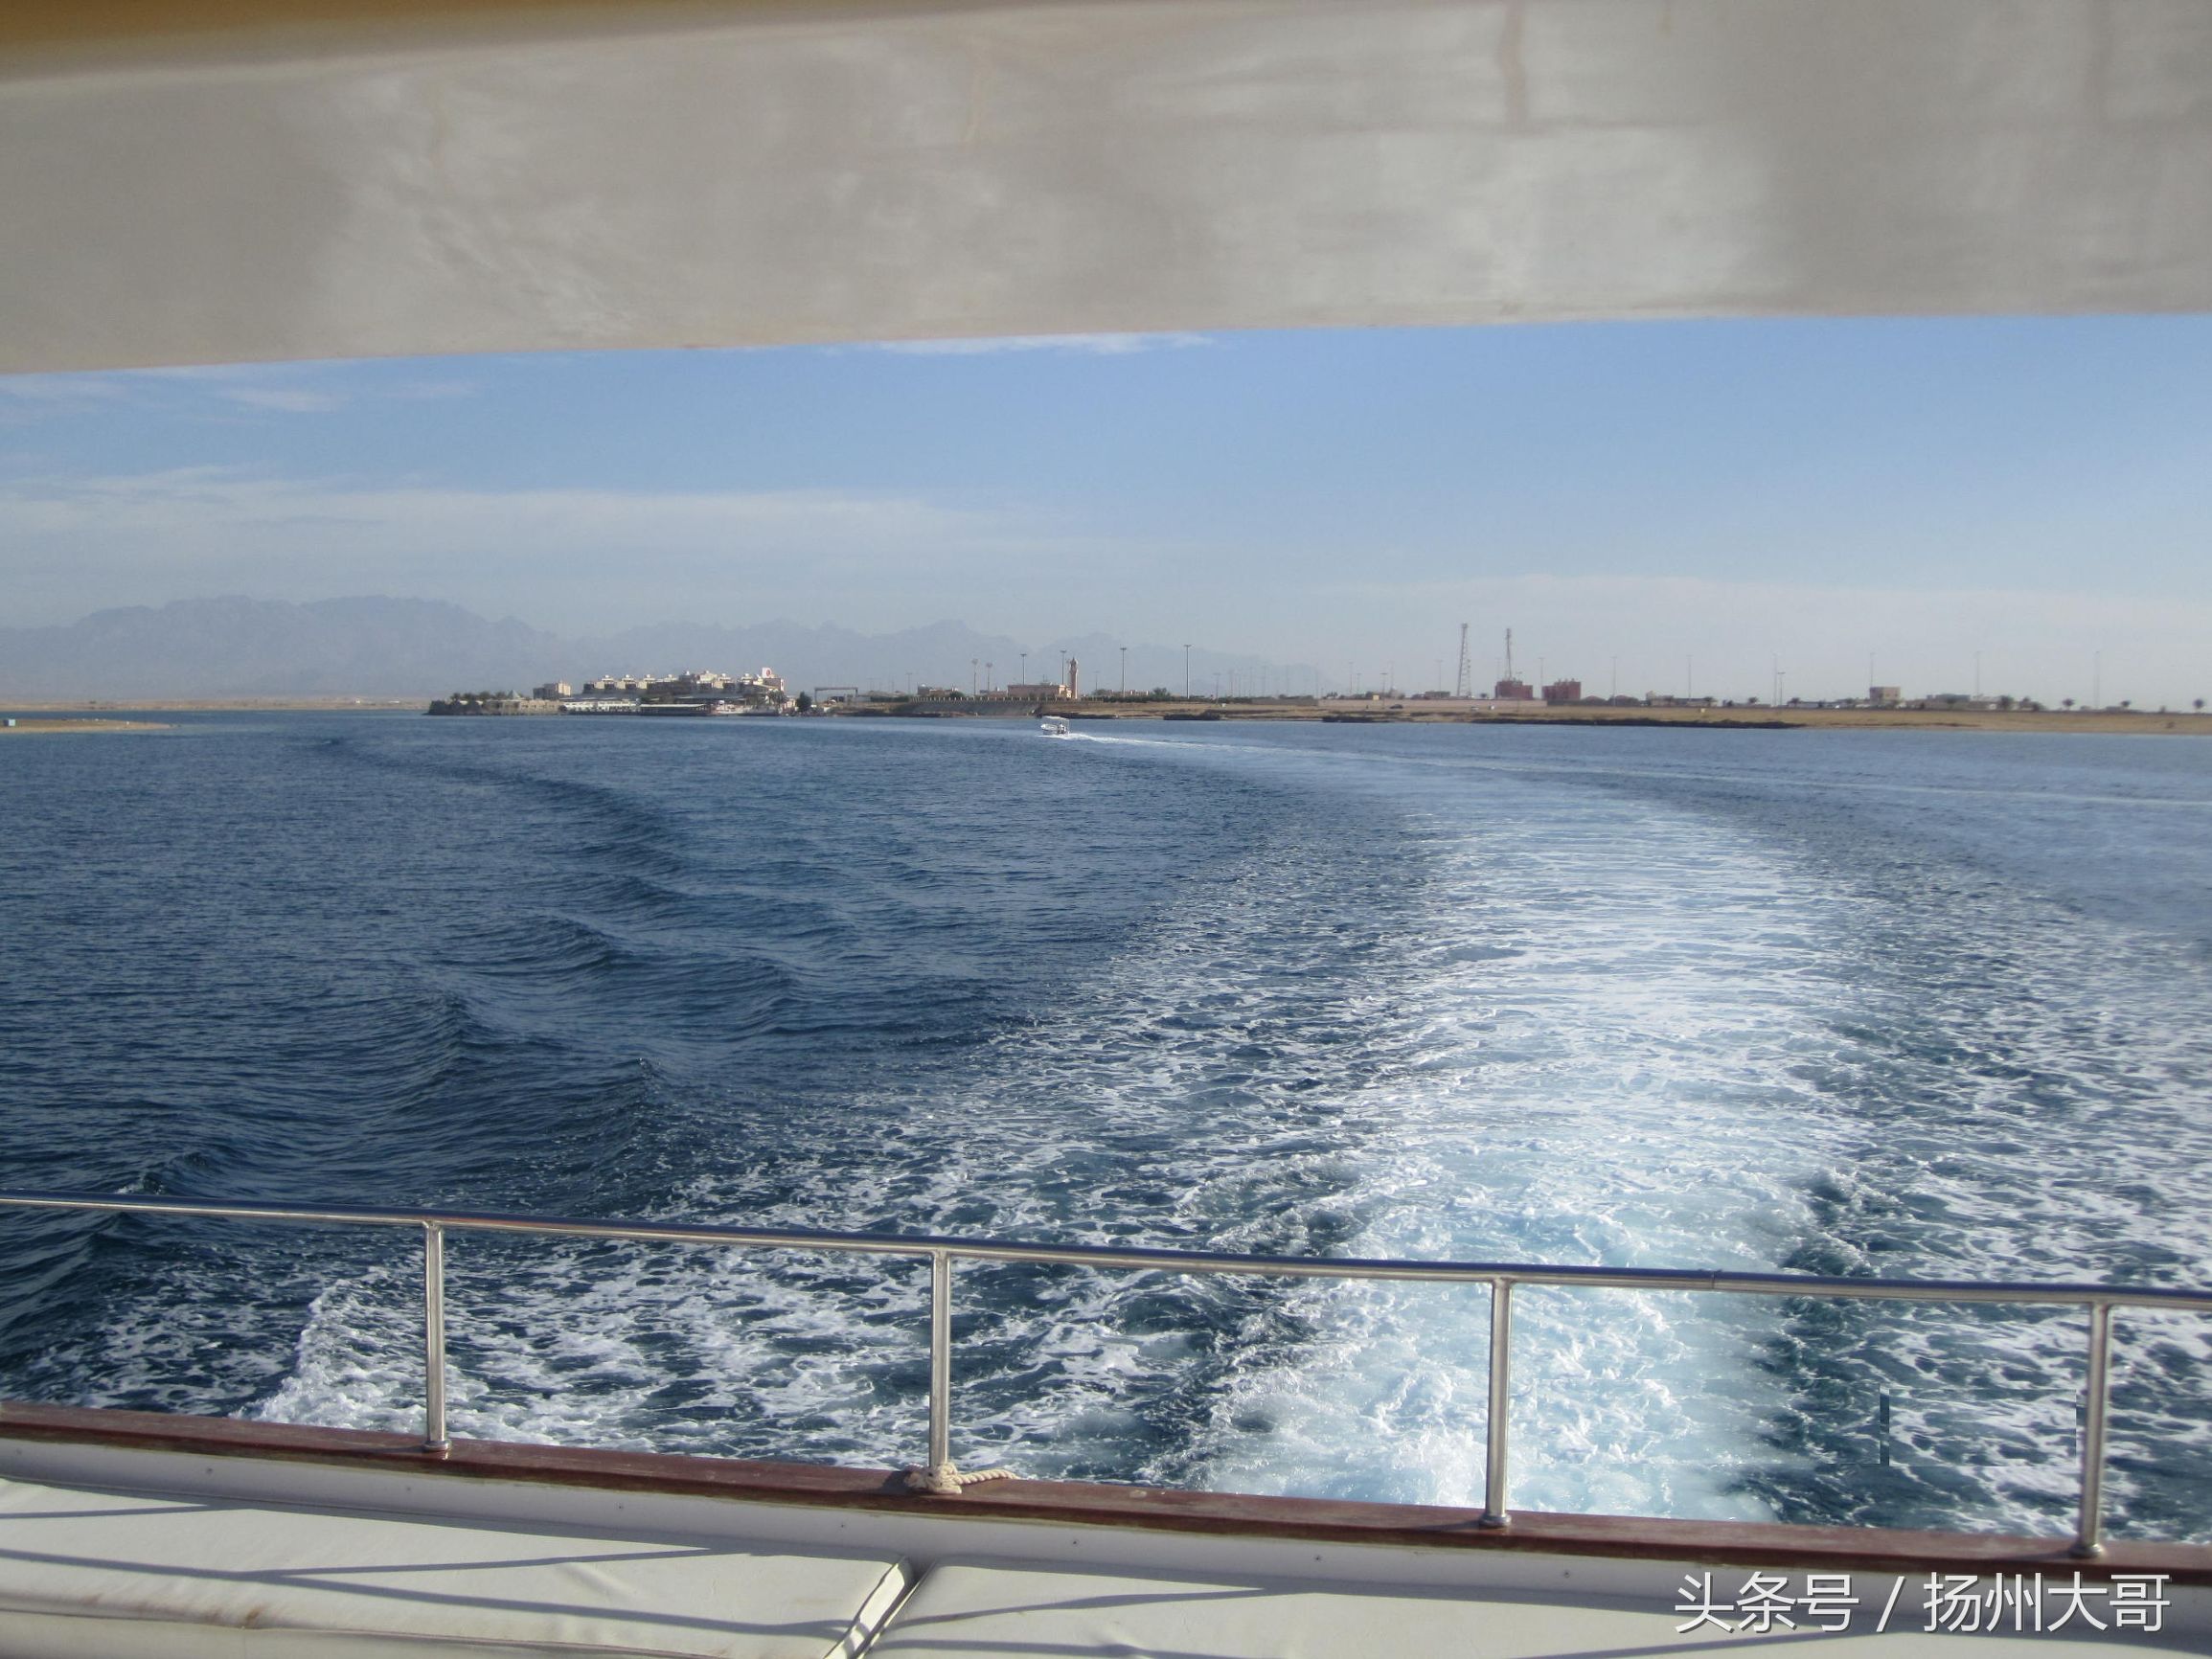 沙特，神奇国度瞧风景之一：红海不红，碧绿清沏；坐船垂钓捕鱼忙